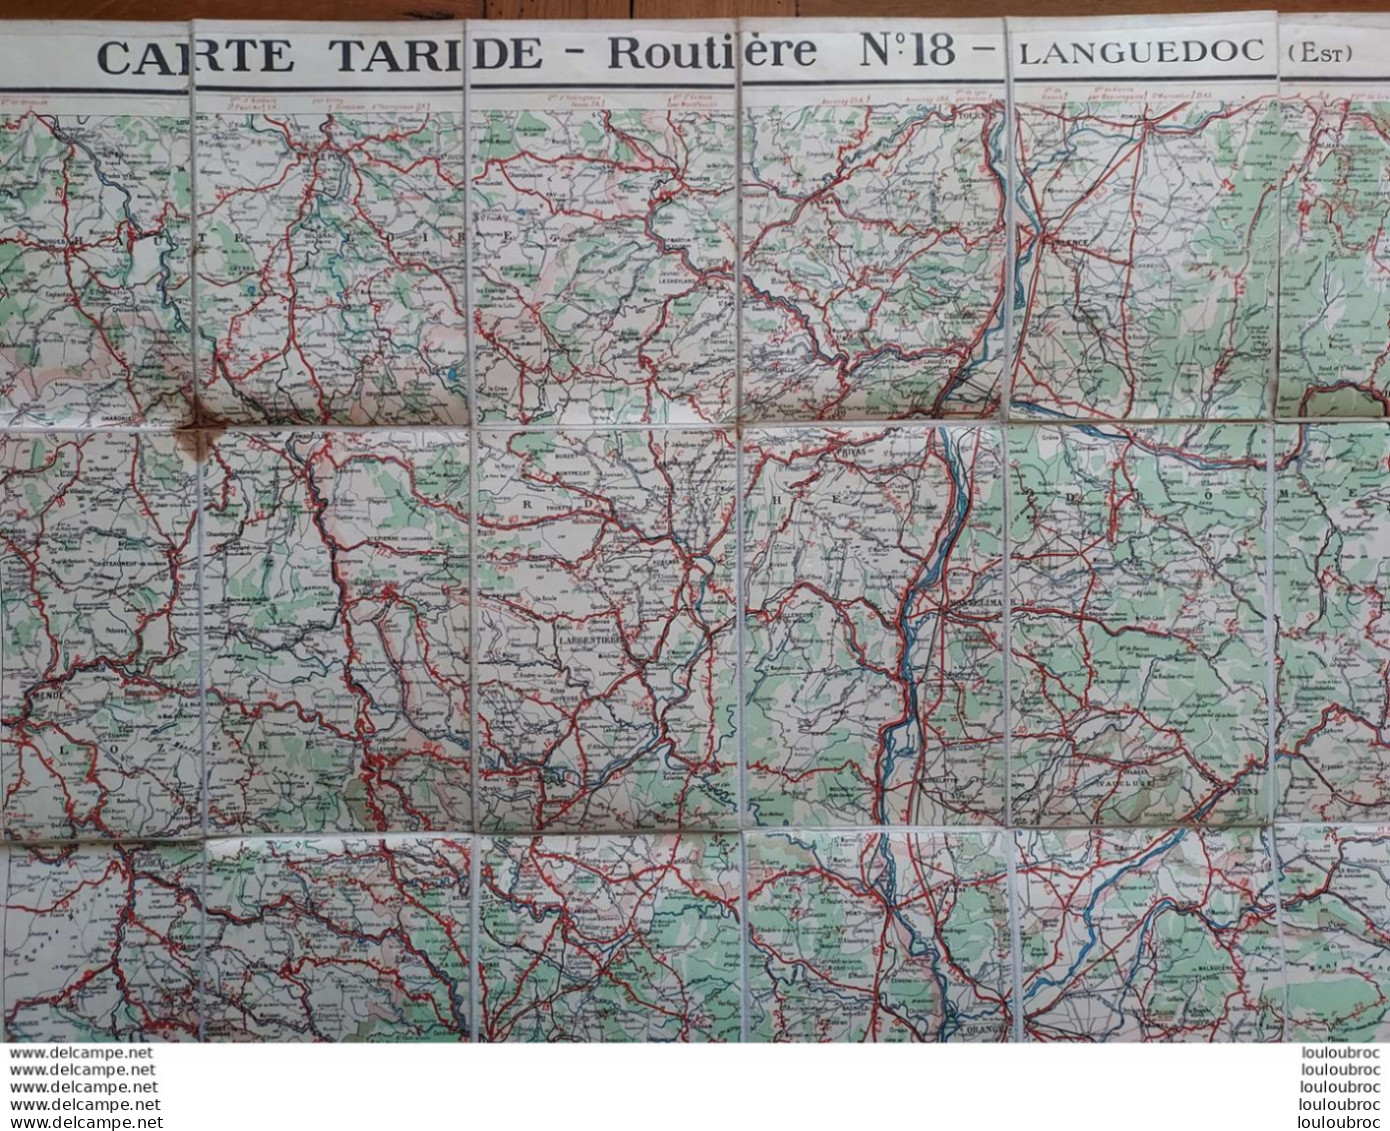 CARTE ROUTIERE TARIDE TOILEE N°18 LANGUEDOC EST - Cartes Routières